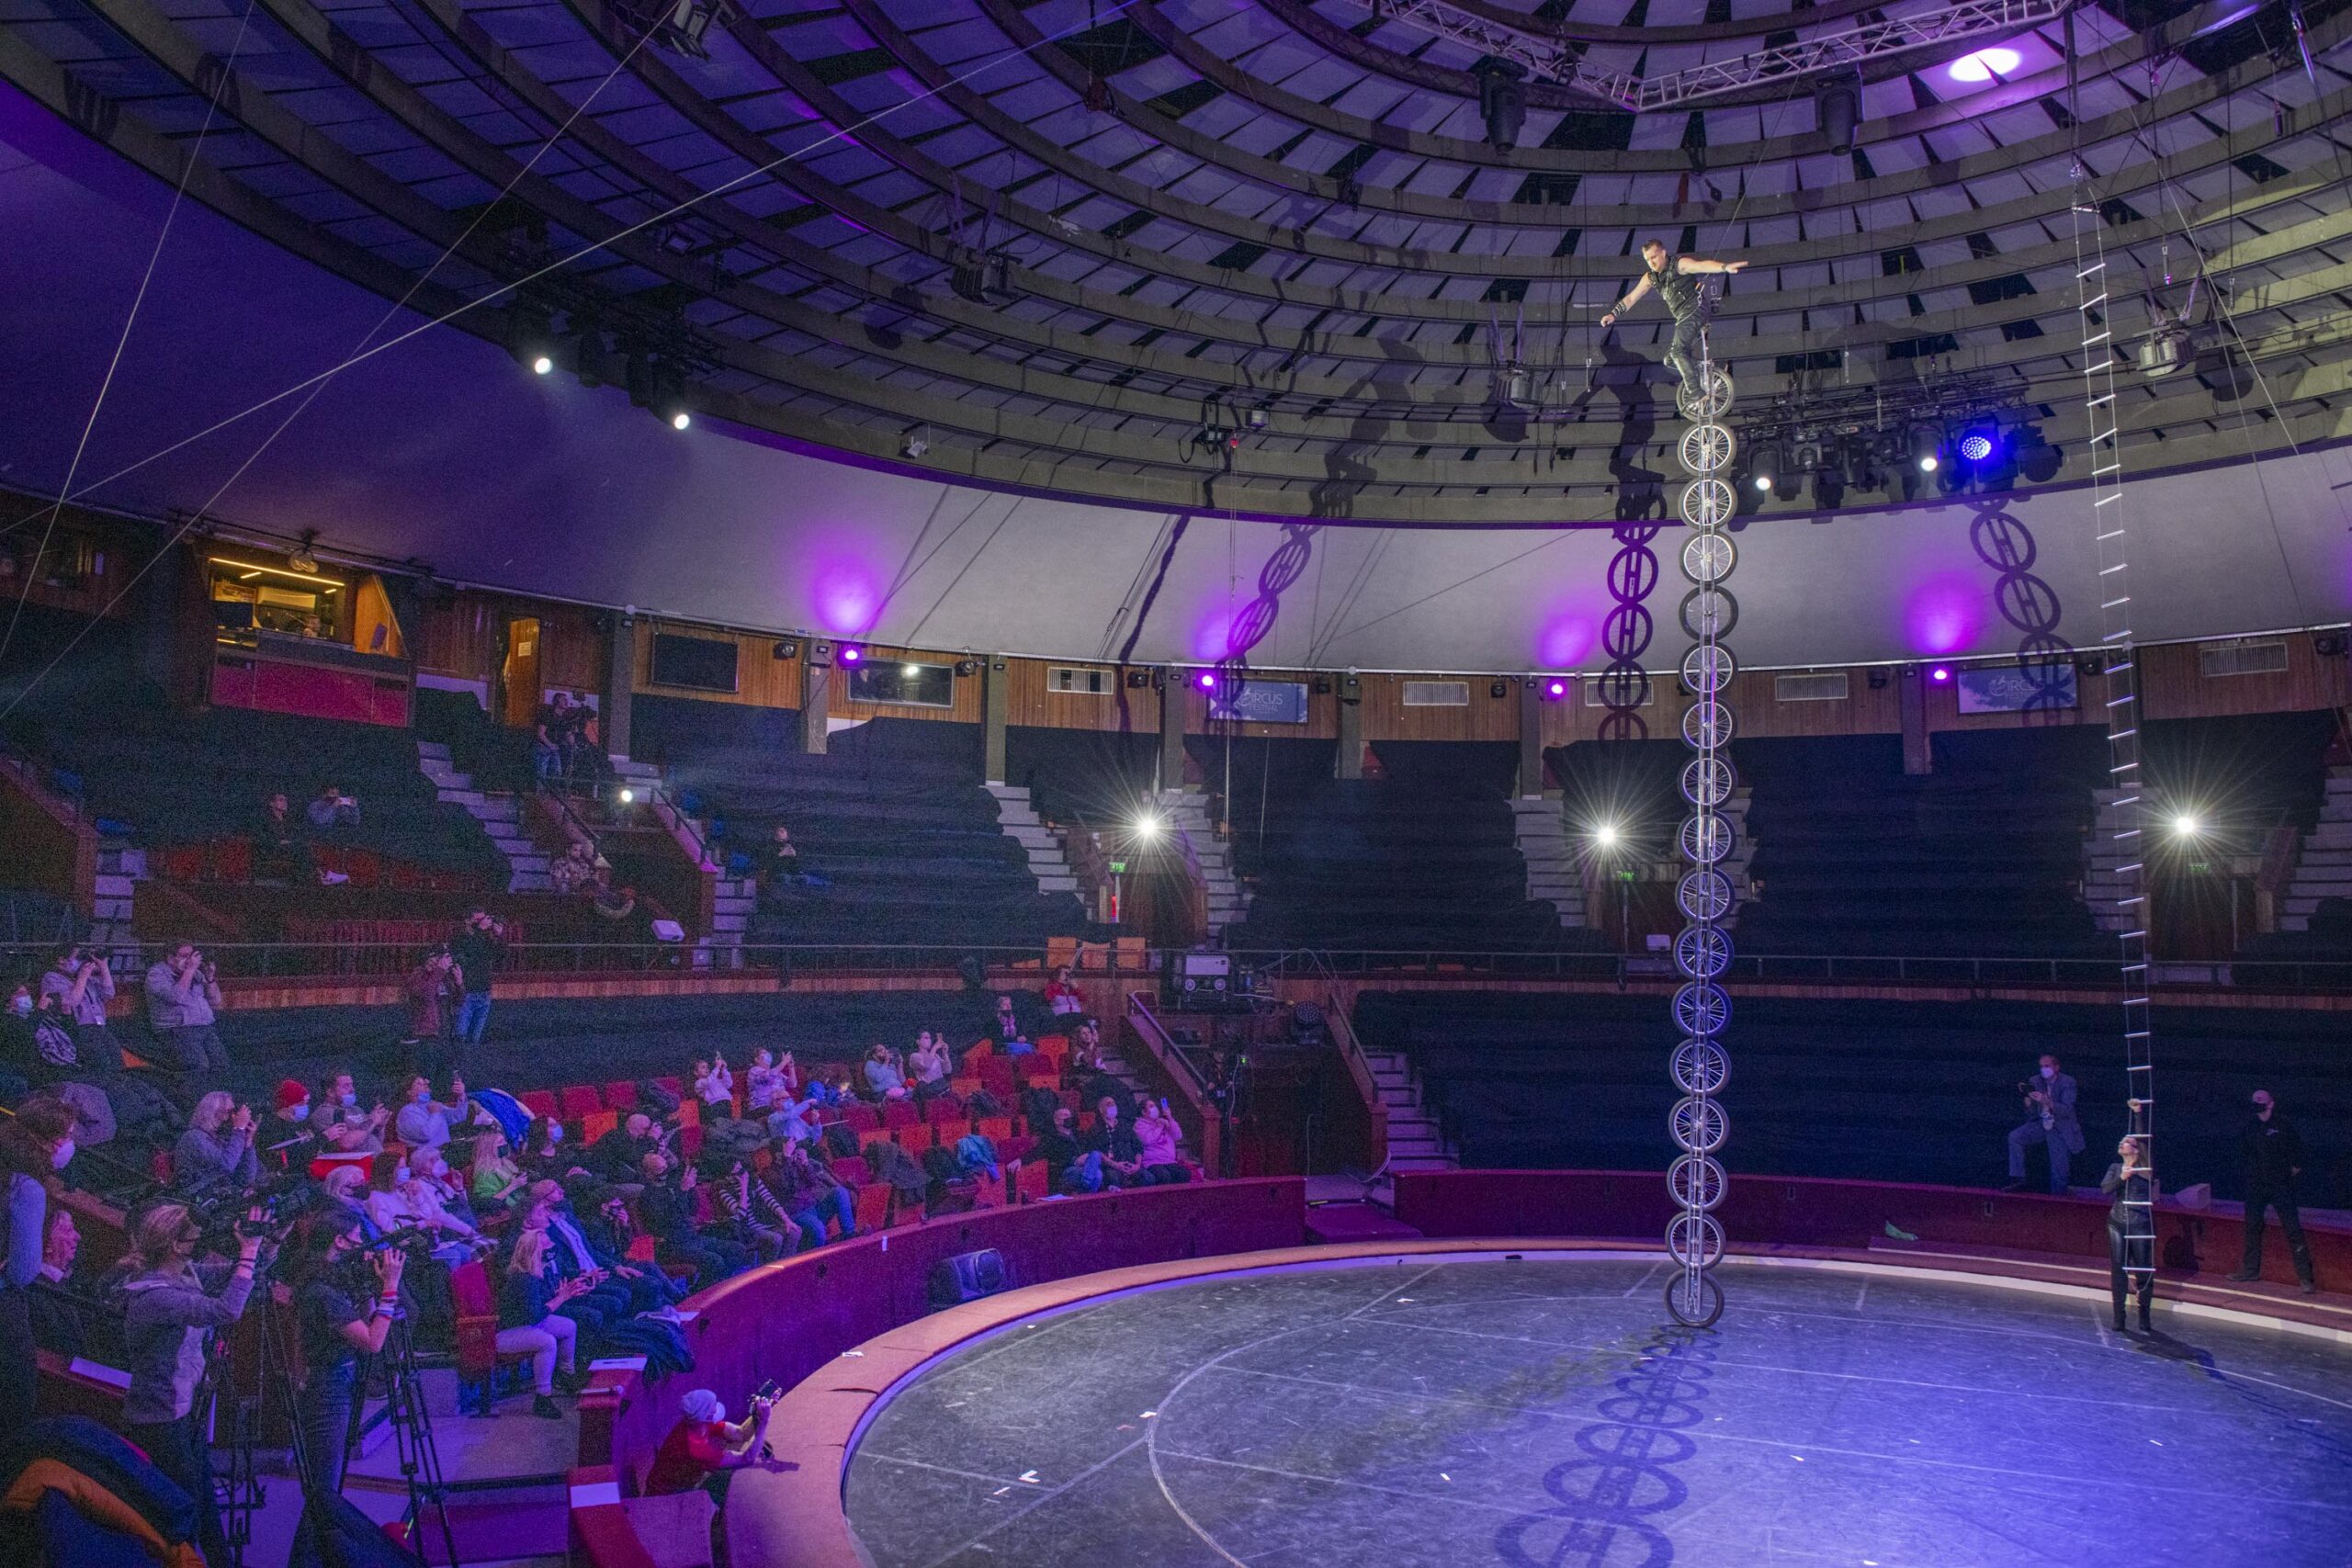 Pavel Valla Bertini a Fővárosi Nagycirkuszban Guinness-világrekorderré vált.Elképesztő produkcióját a 14. Budapest Nemzetközi Cirkuszfesztivál "B" versenyprogramjában is bemutatja a közönségnek. 